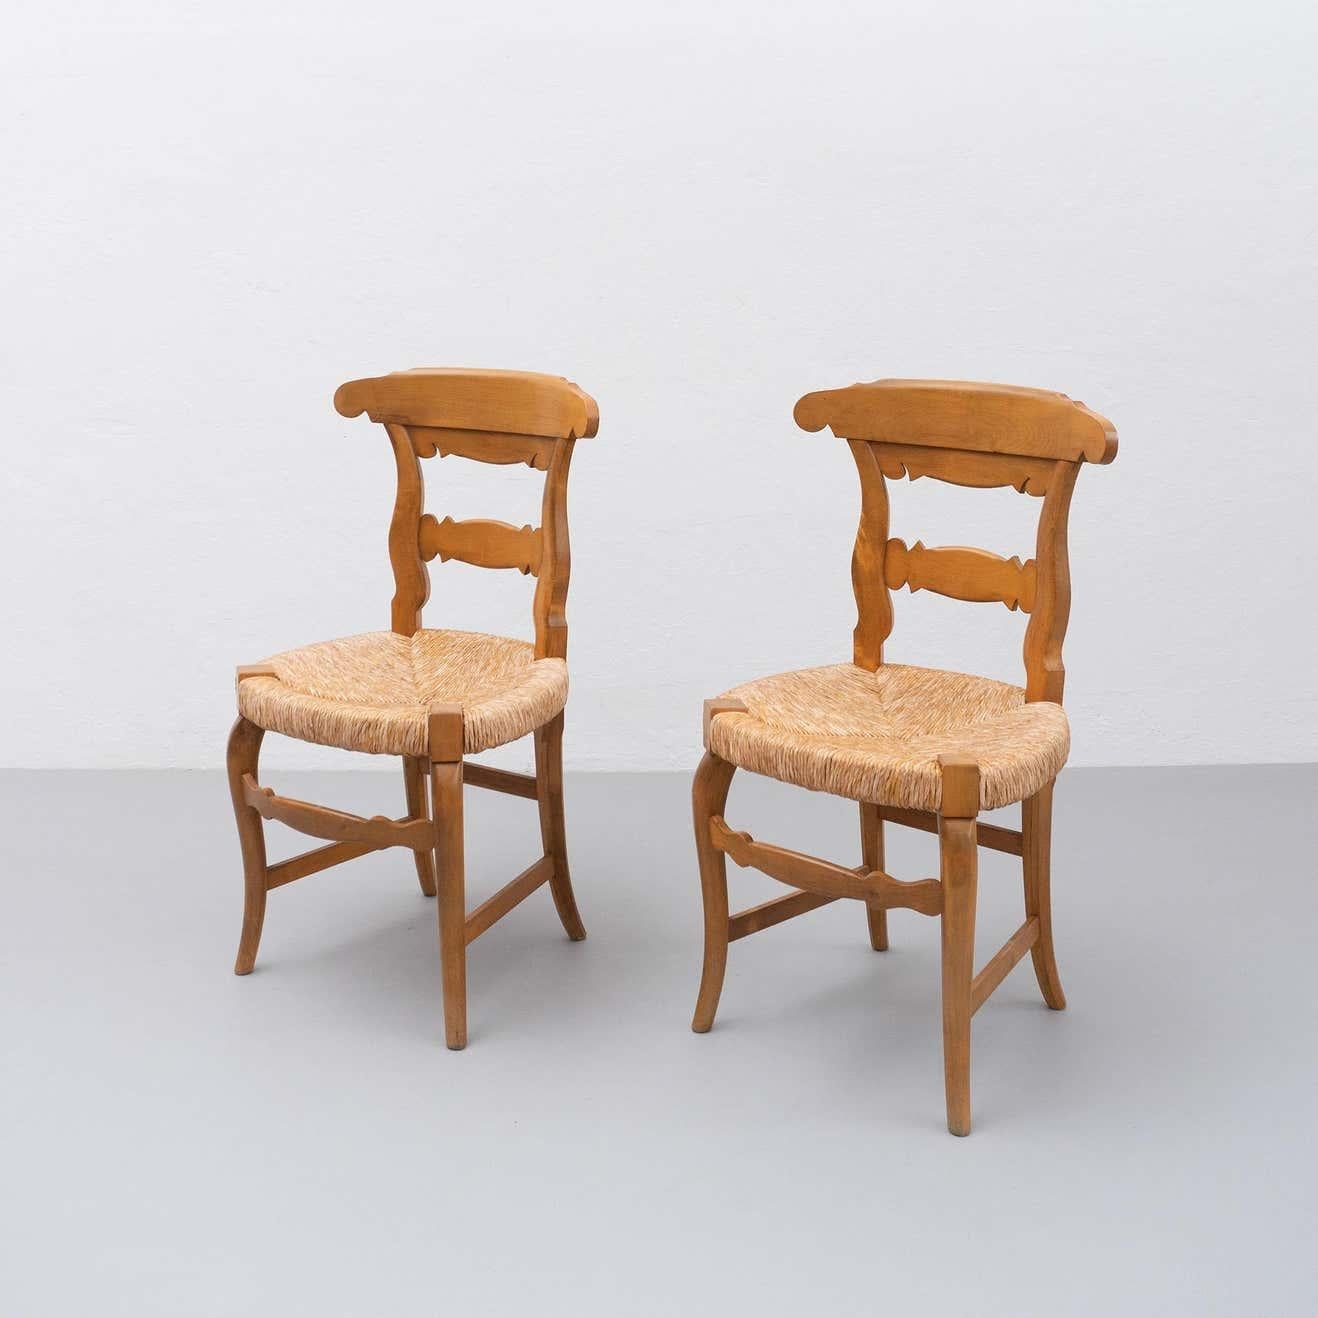 Ensemble de deux chaises provençales du début du 20e siècle. Chaises en bois avec une assise traditionnelle en rotin, des lignes courbes et des détails caractéristiques du style provincial français.

En bon état d'origine, avec une usure mineure